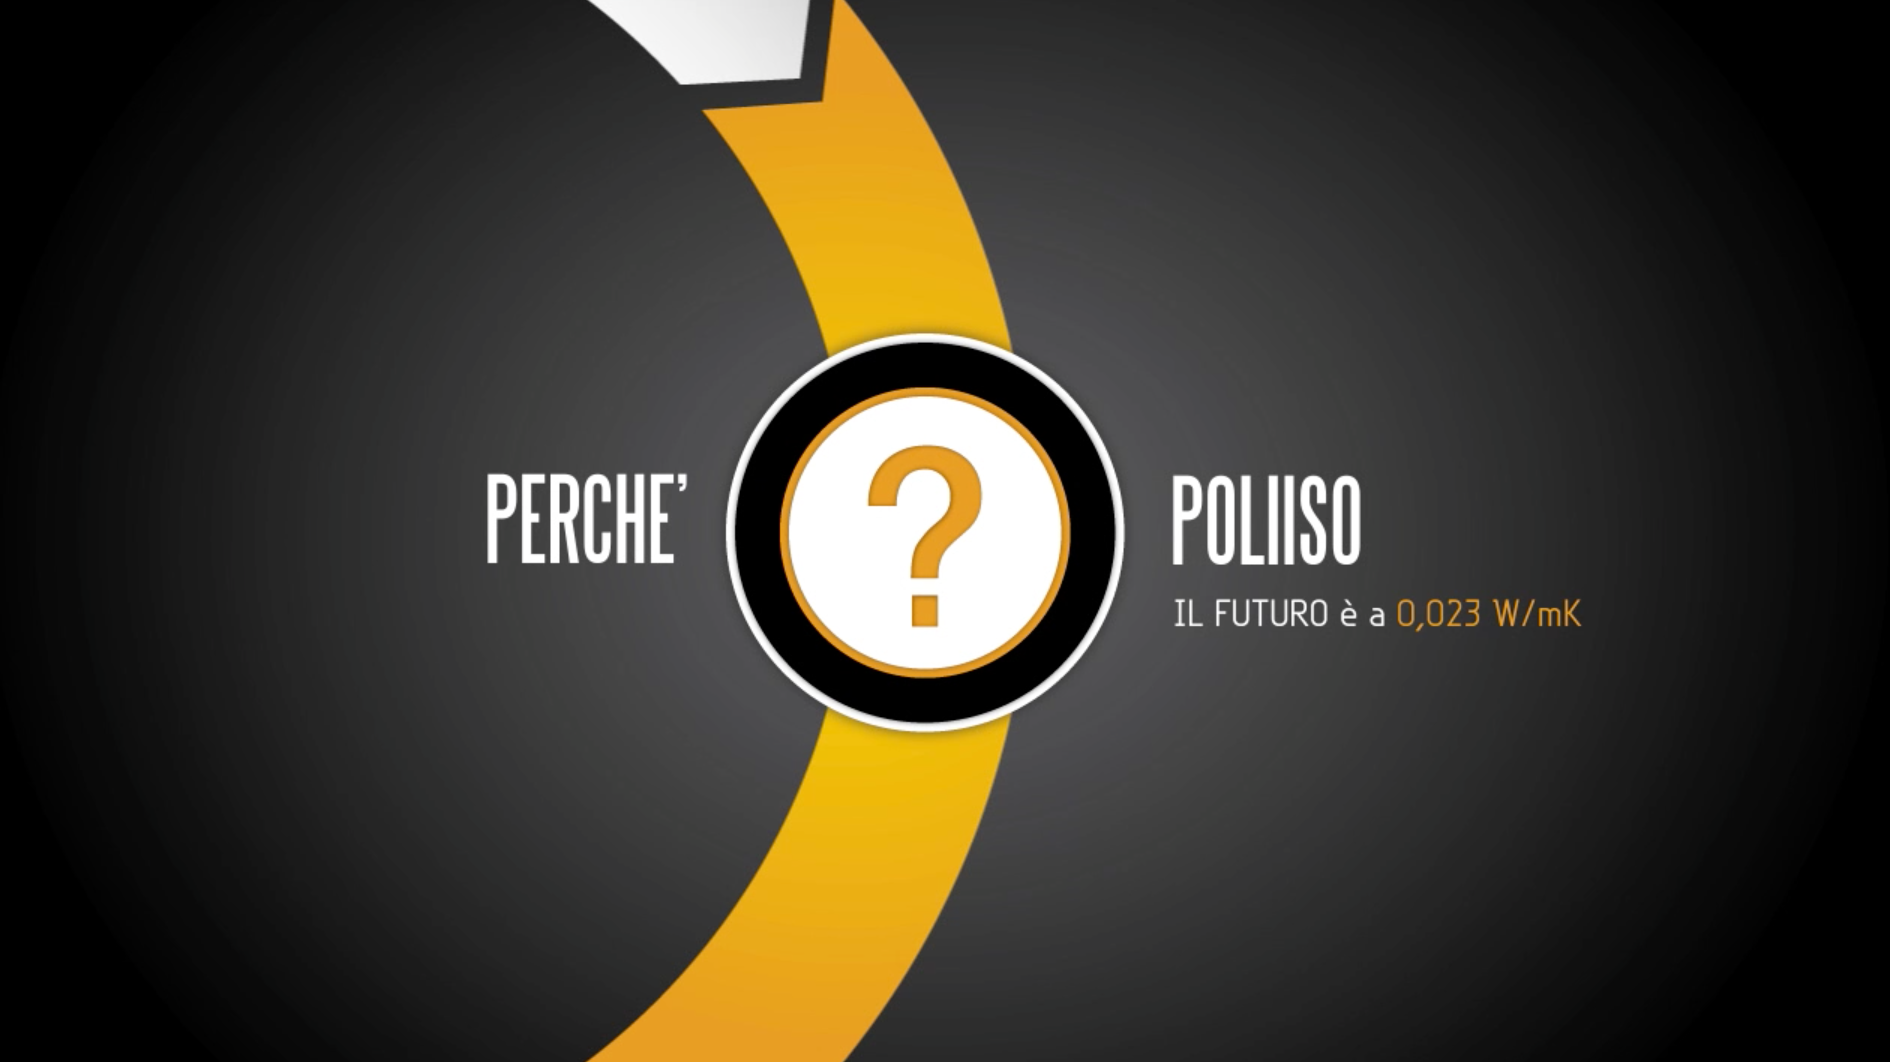 Why choosing POLIISO?